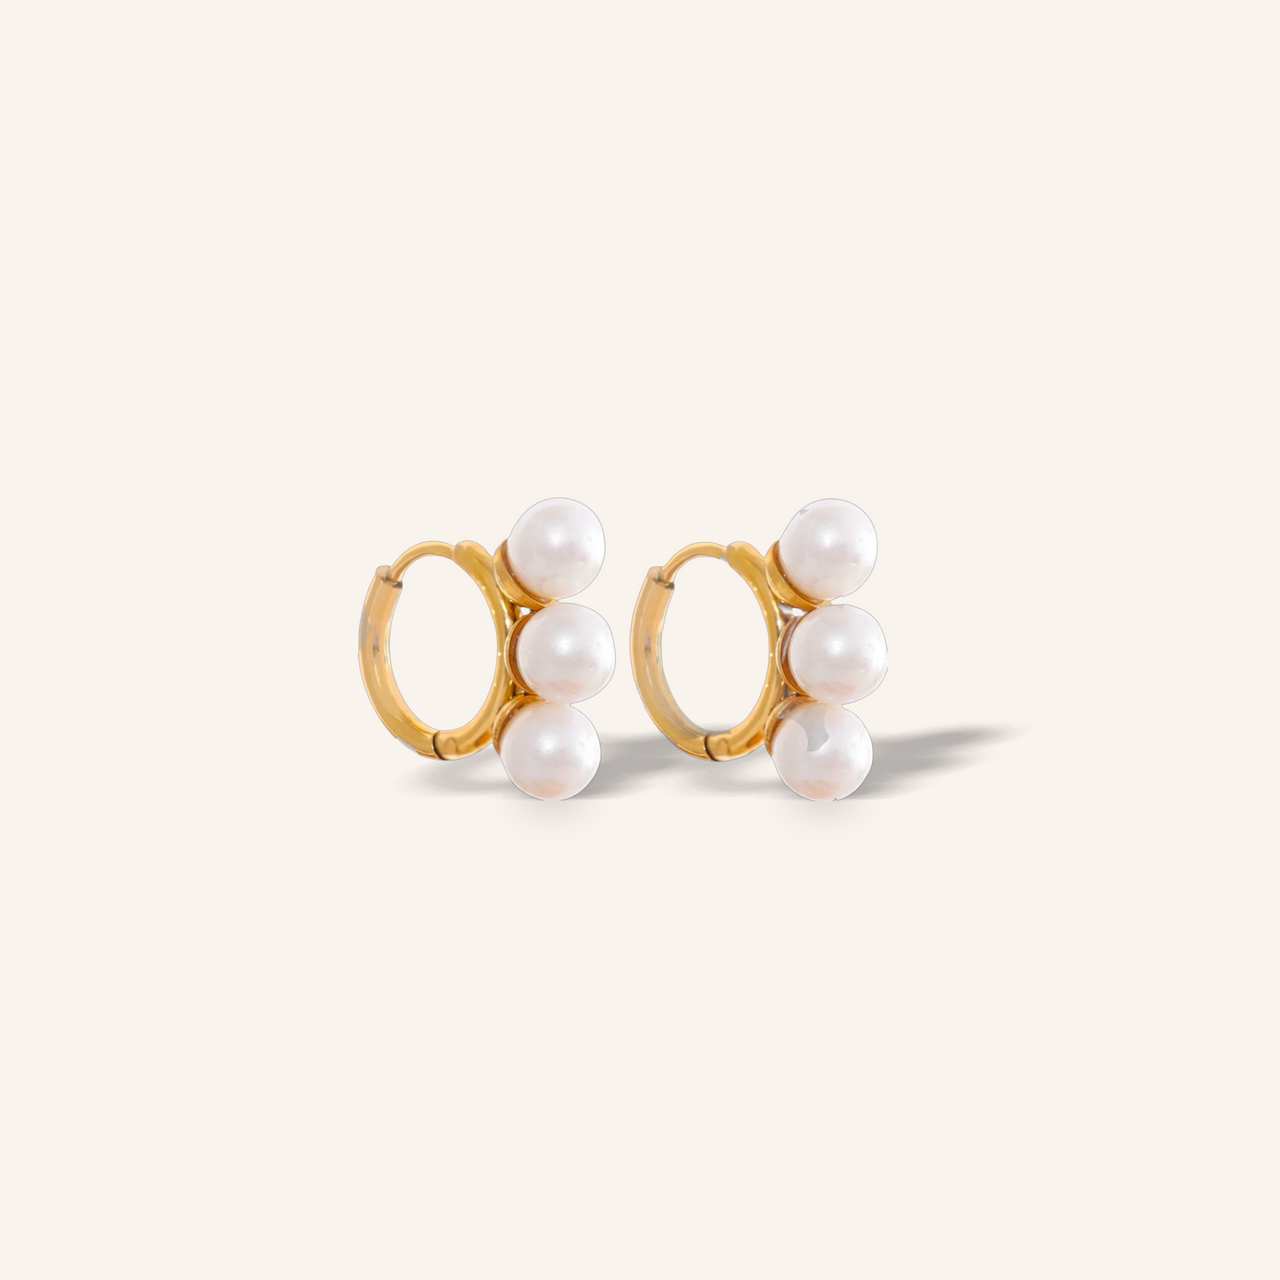 Triple mini pearls earrings